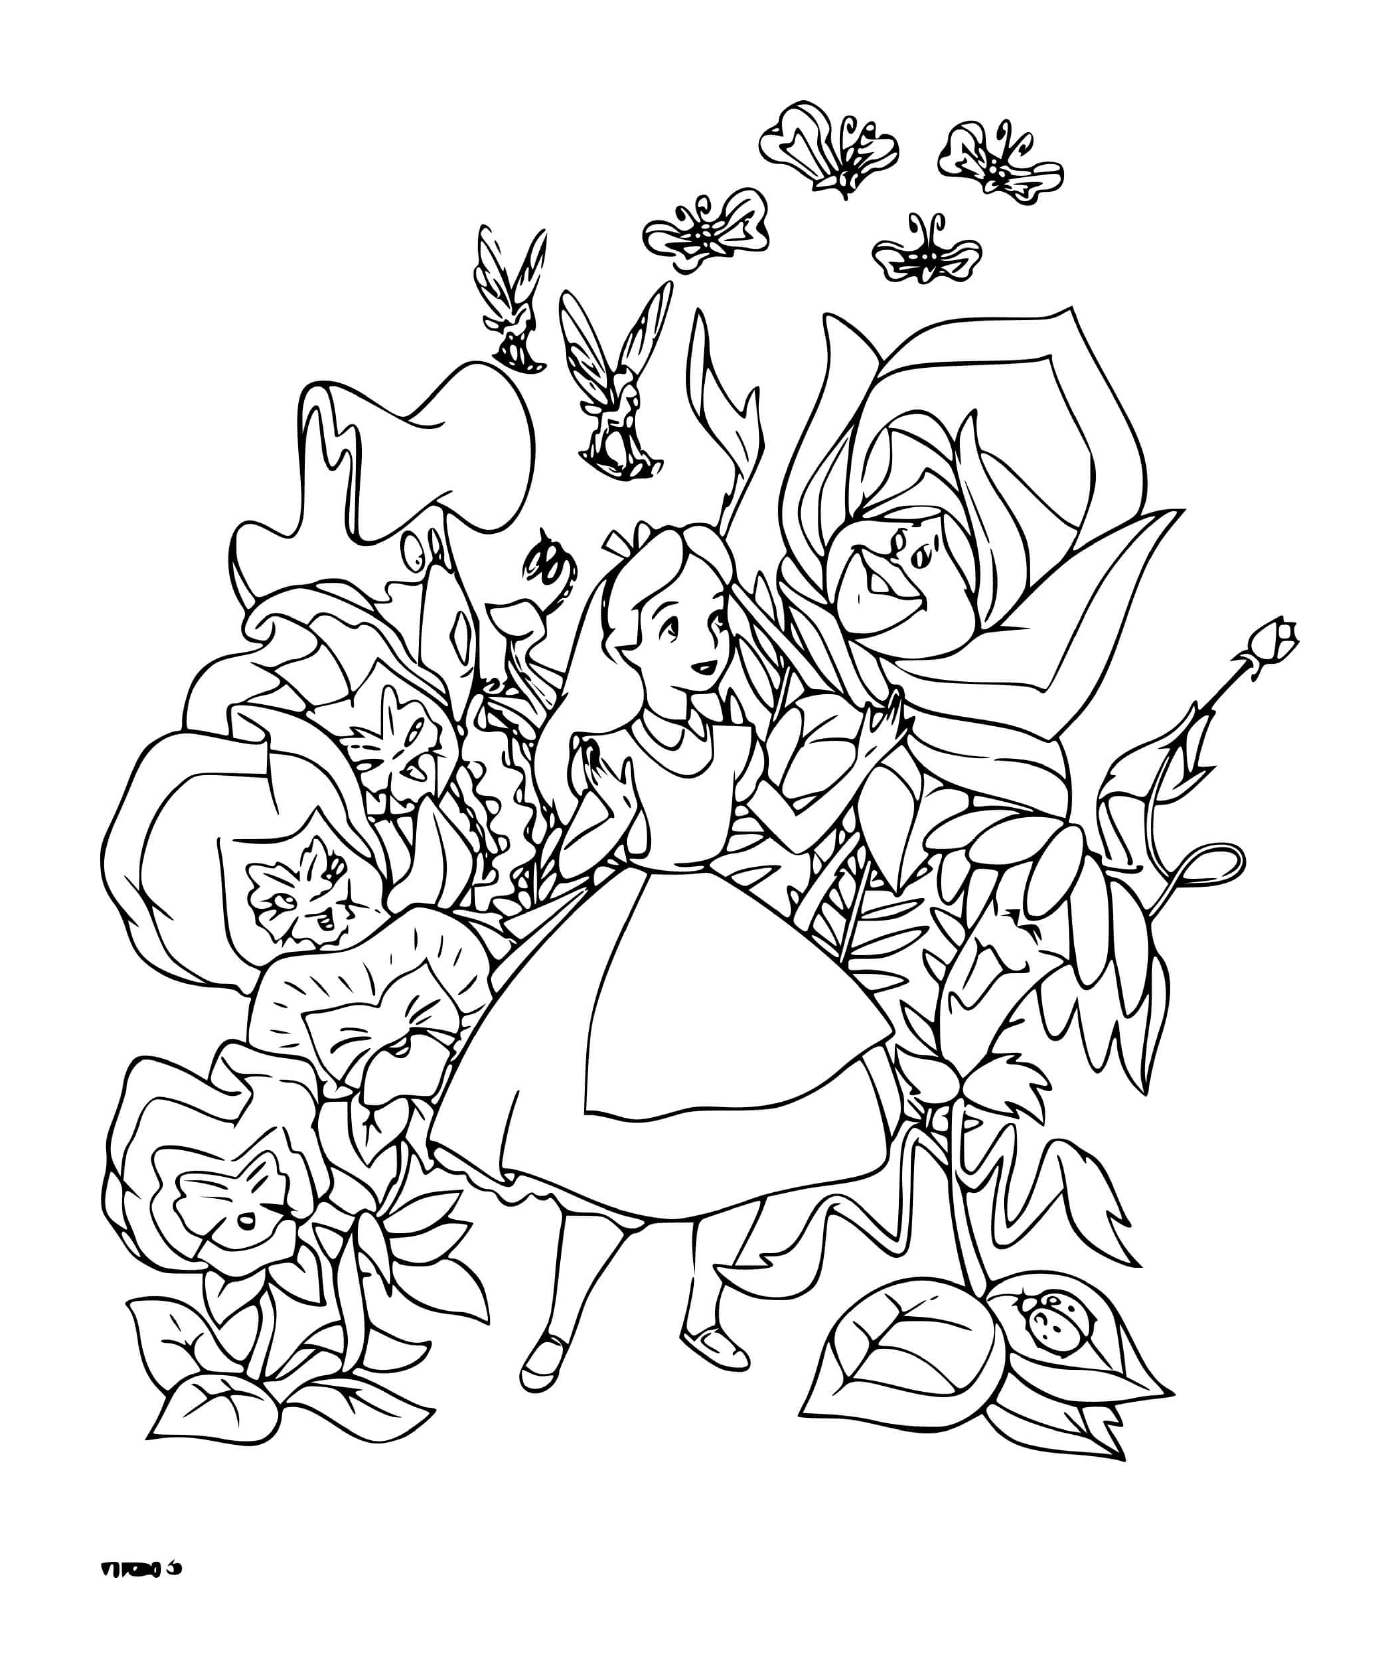   Une adulte d'Alice qui parle avec des fleurs 